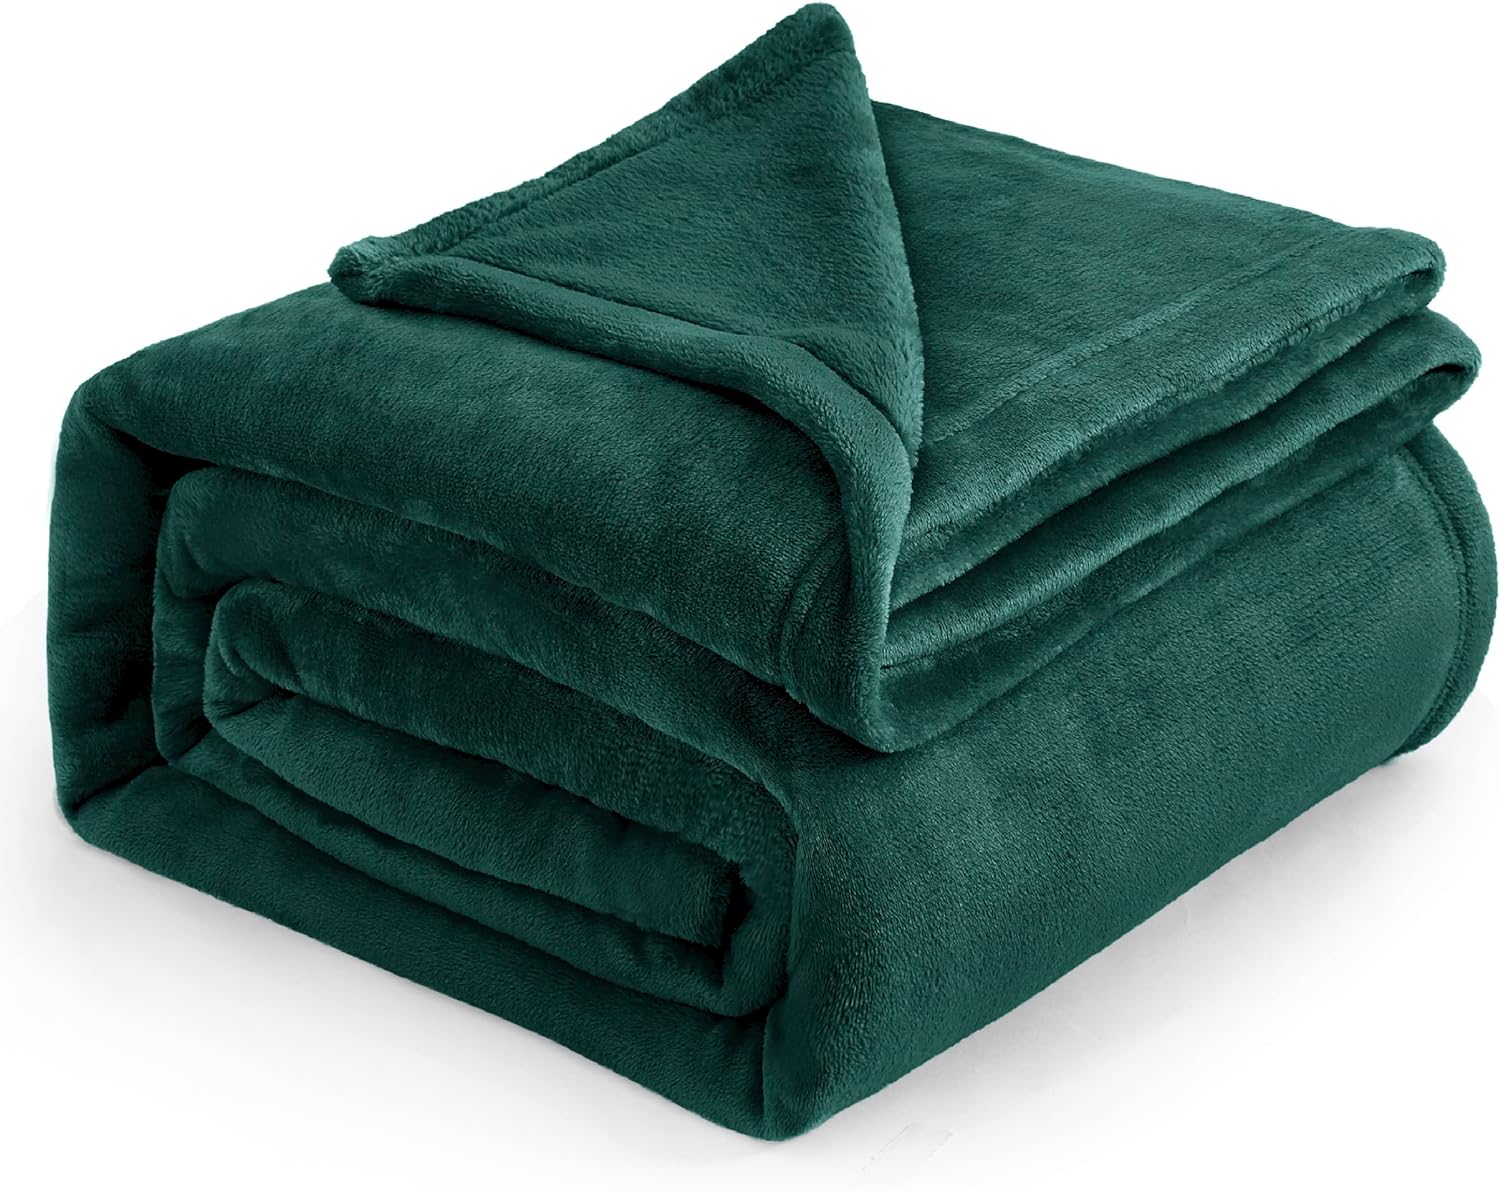 Bedsure Fleece Blanket Queen Blanket Emerald Green - Bed Blanket Soft Lightweight Plush Fuzzy Cozy Luxury Microfiber, 90x90 inches